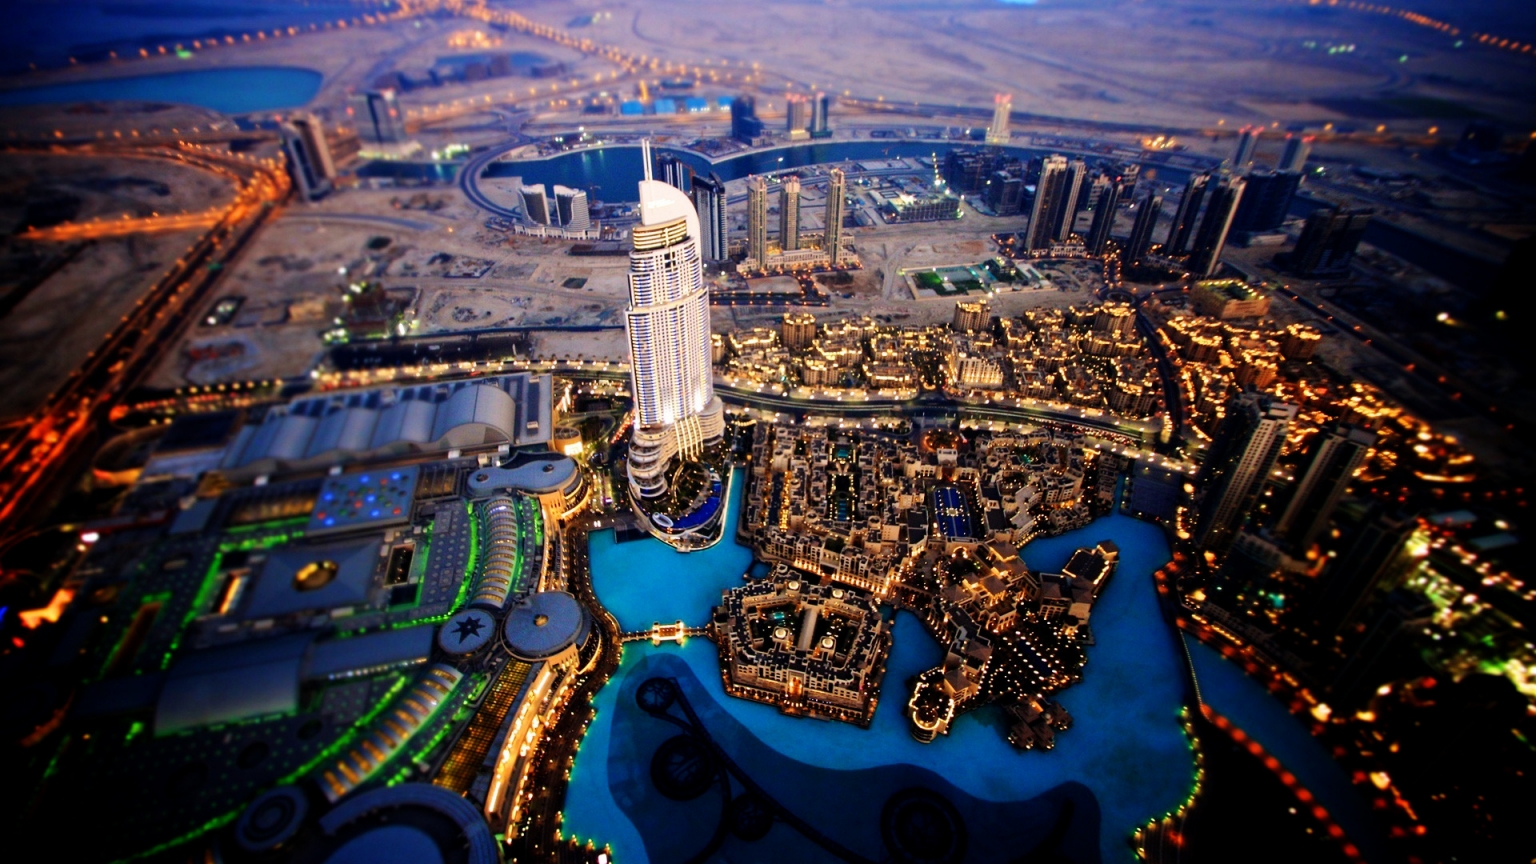 Dubai Sky View for 1536 x 864 HDTV resolution